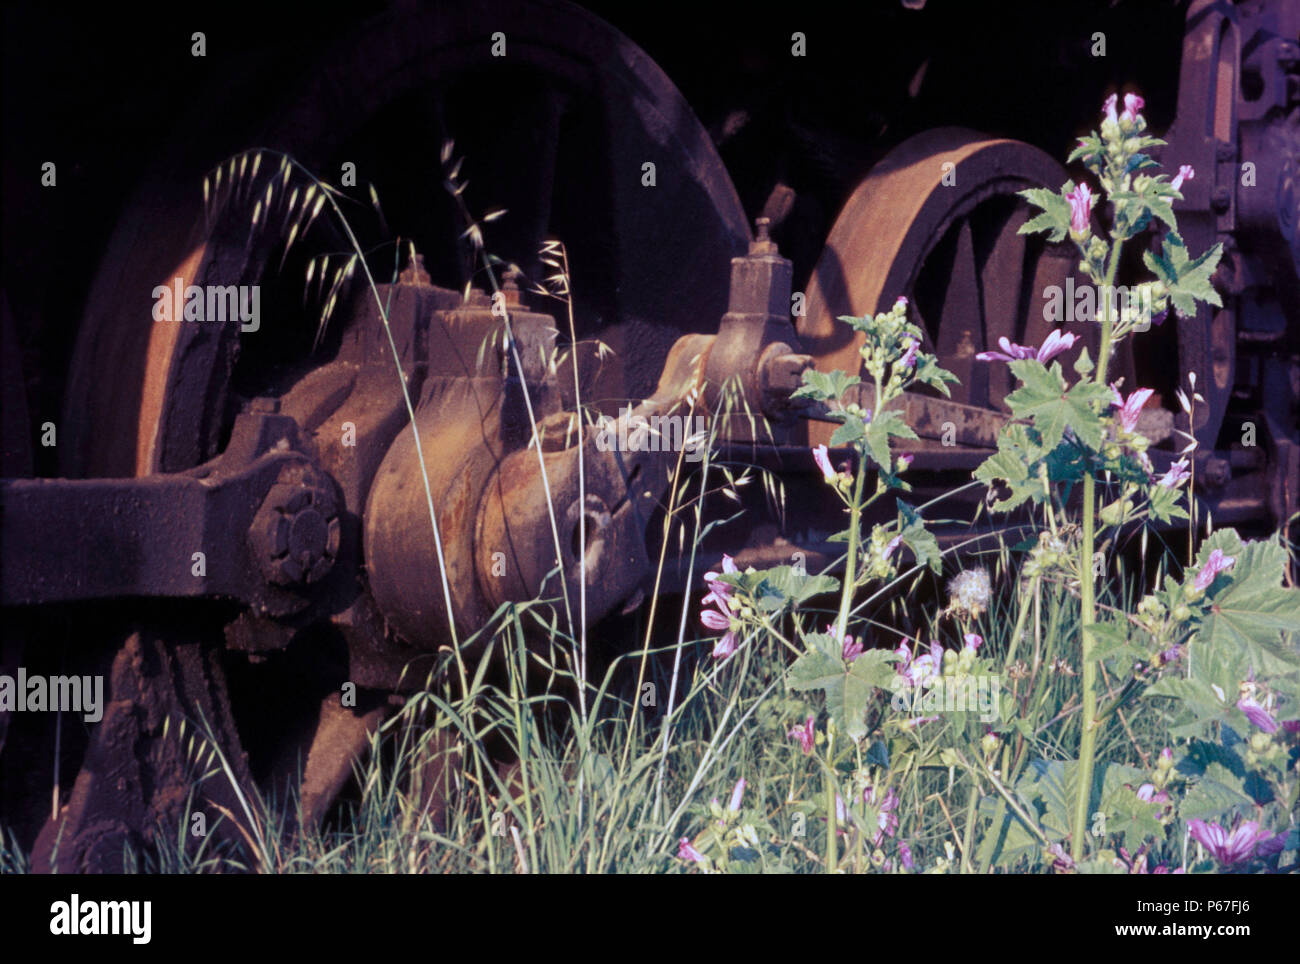 Ruote motrici in mezzo alla vegetazione rampante della locomotiva a vapore cimitero a Salonicco Grecia. Foto Stock